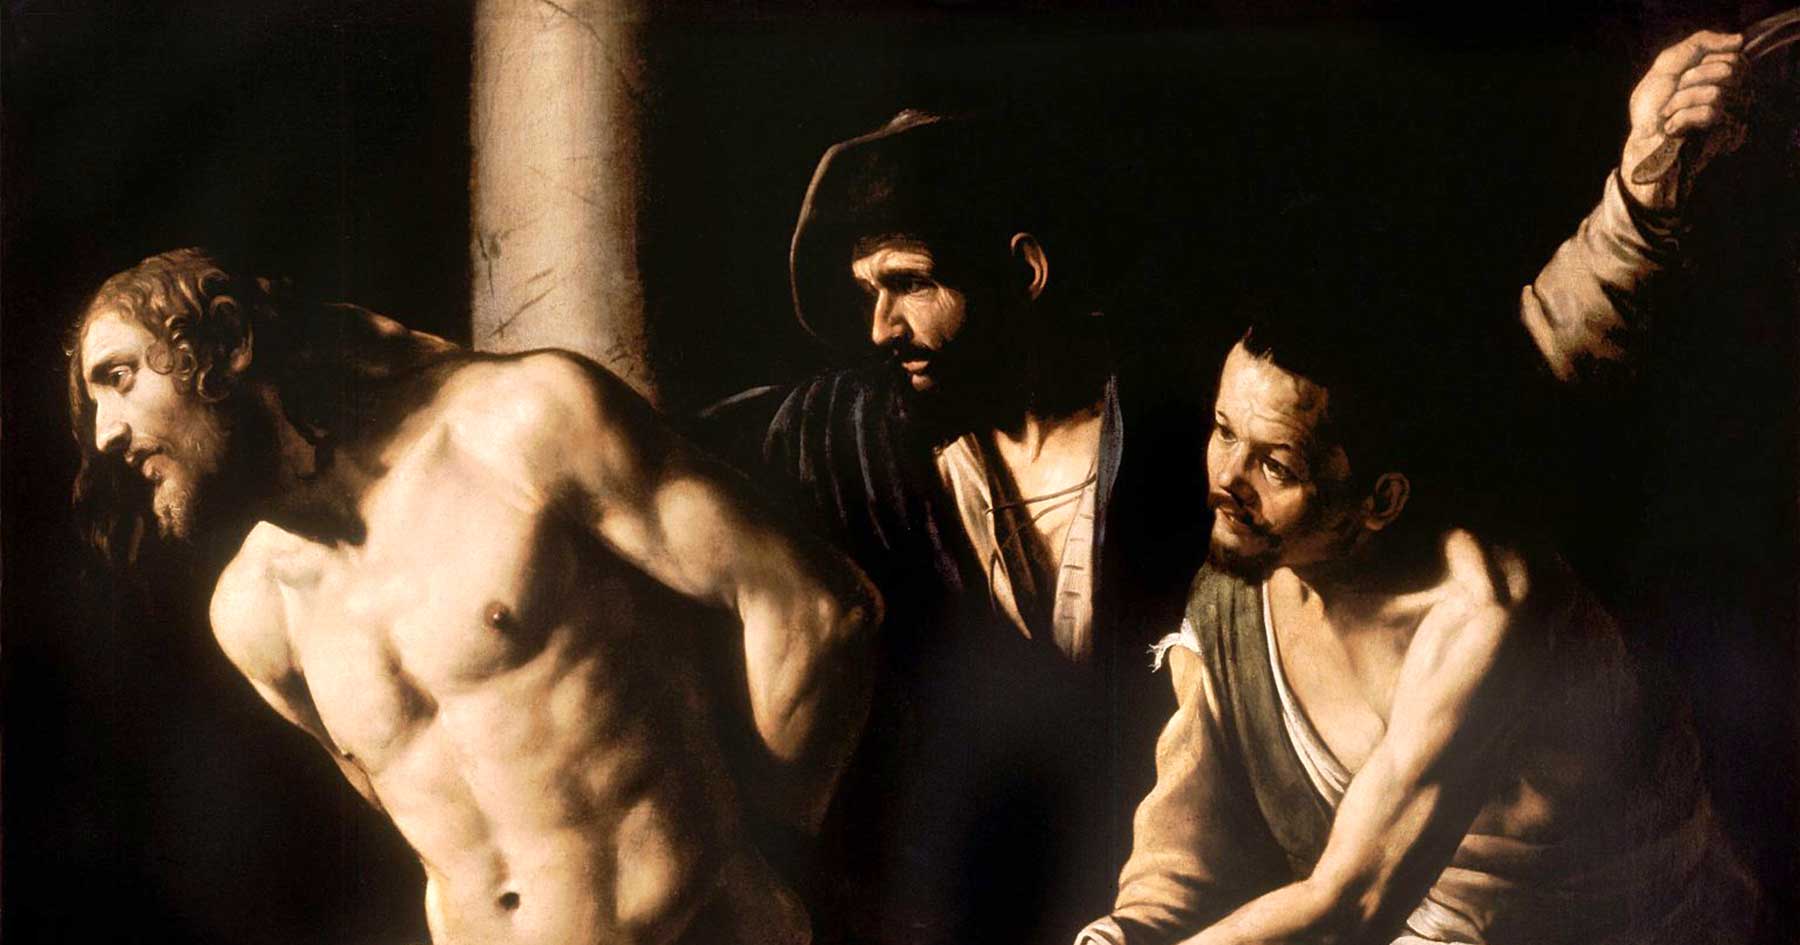 Christ at the Column, Caravaggio. Art: Musée des Beaux-Arts de Rouen/Wikipedia